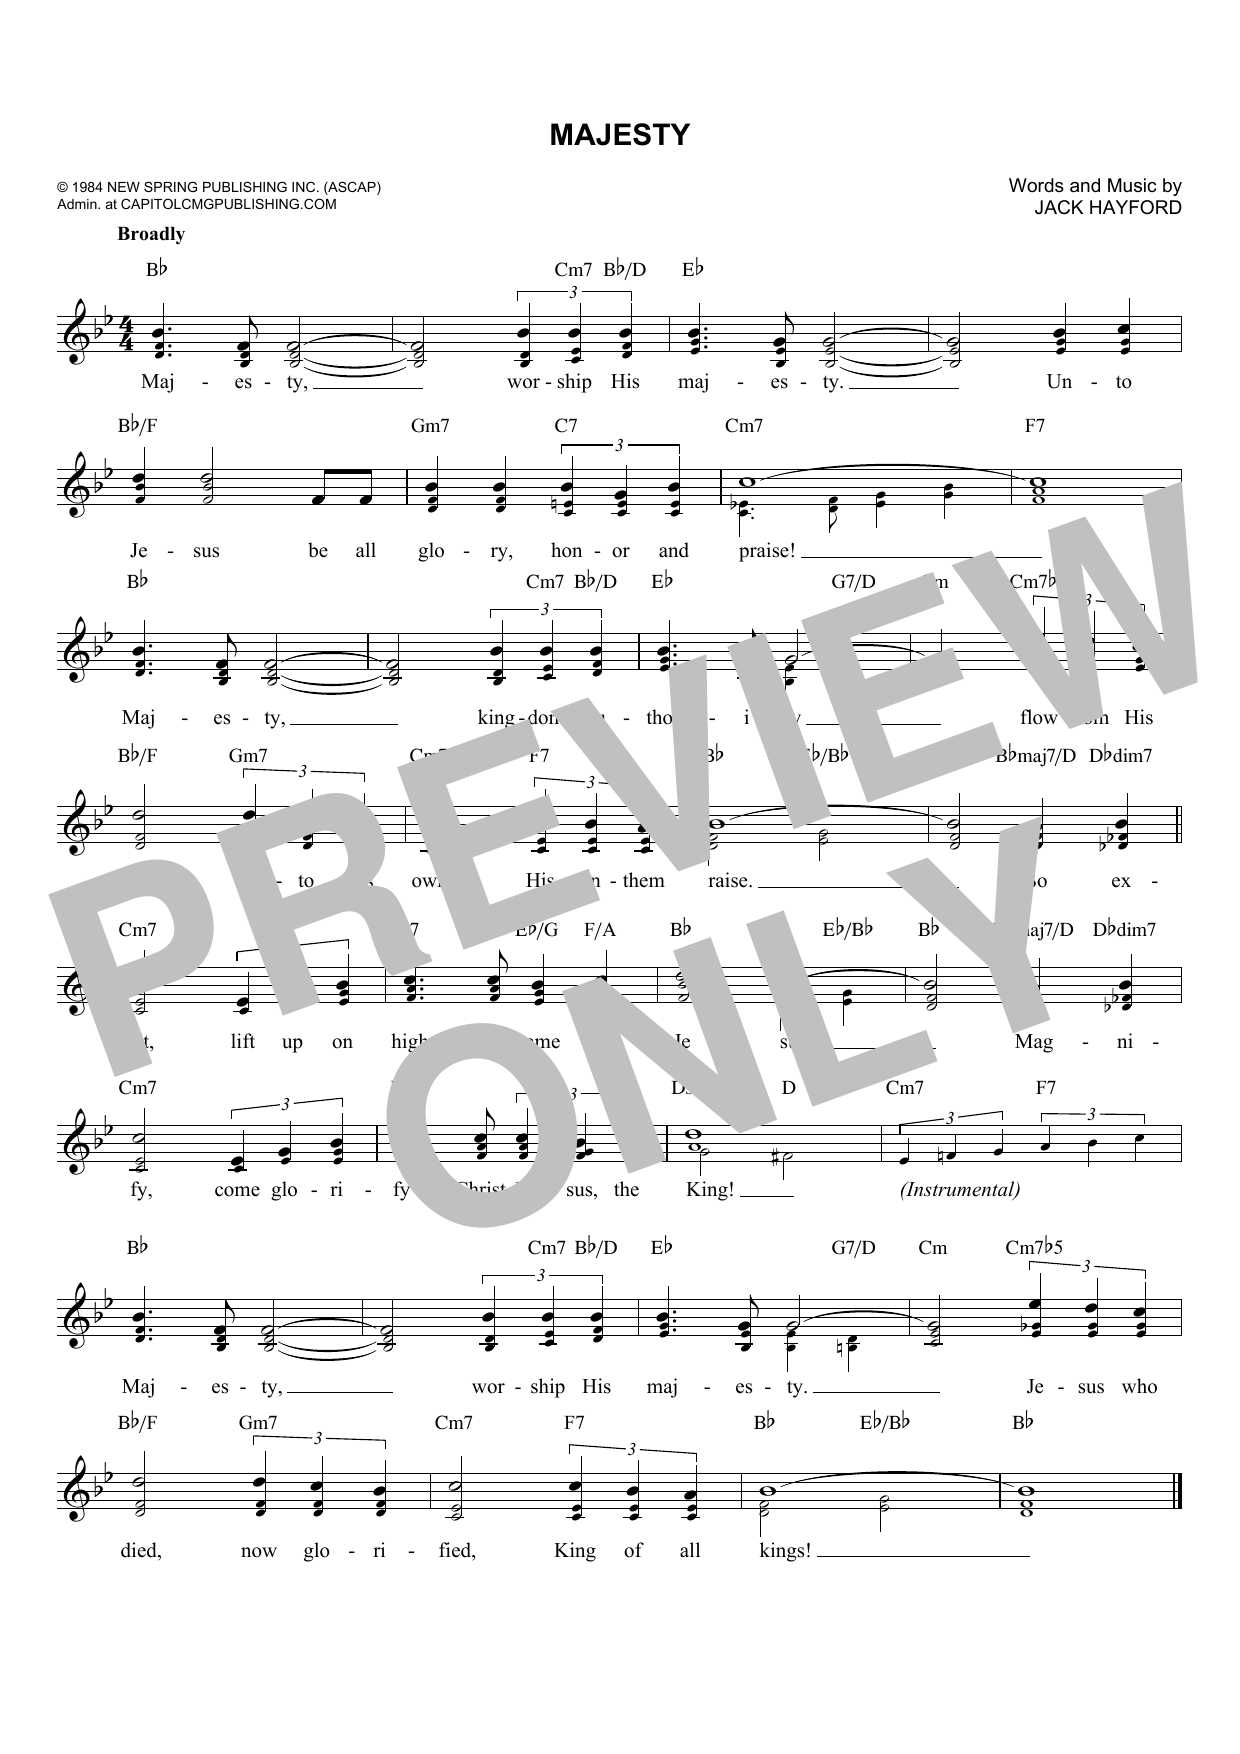 Jack Hayford Majesty Sheet Music Notes & Chords for Ukulele - Download or Print PDF